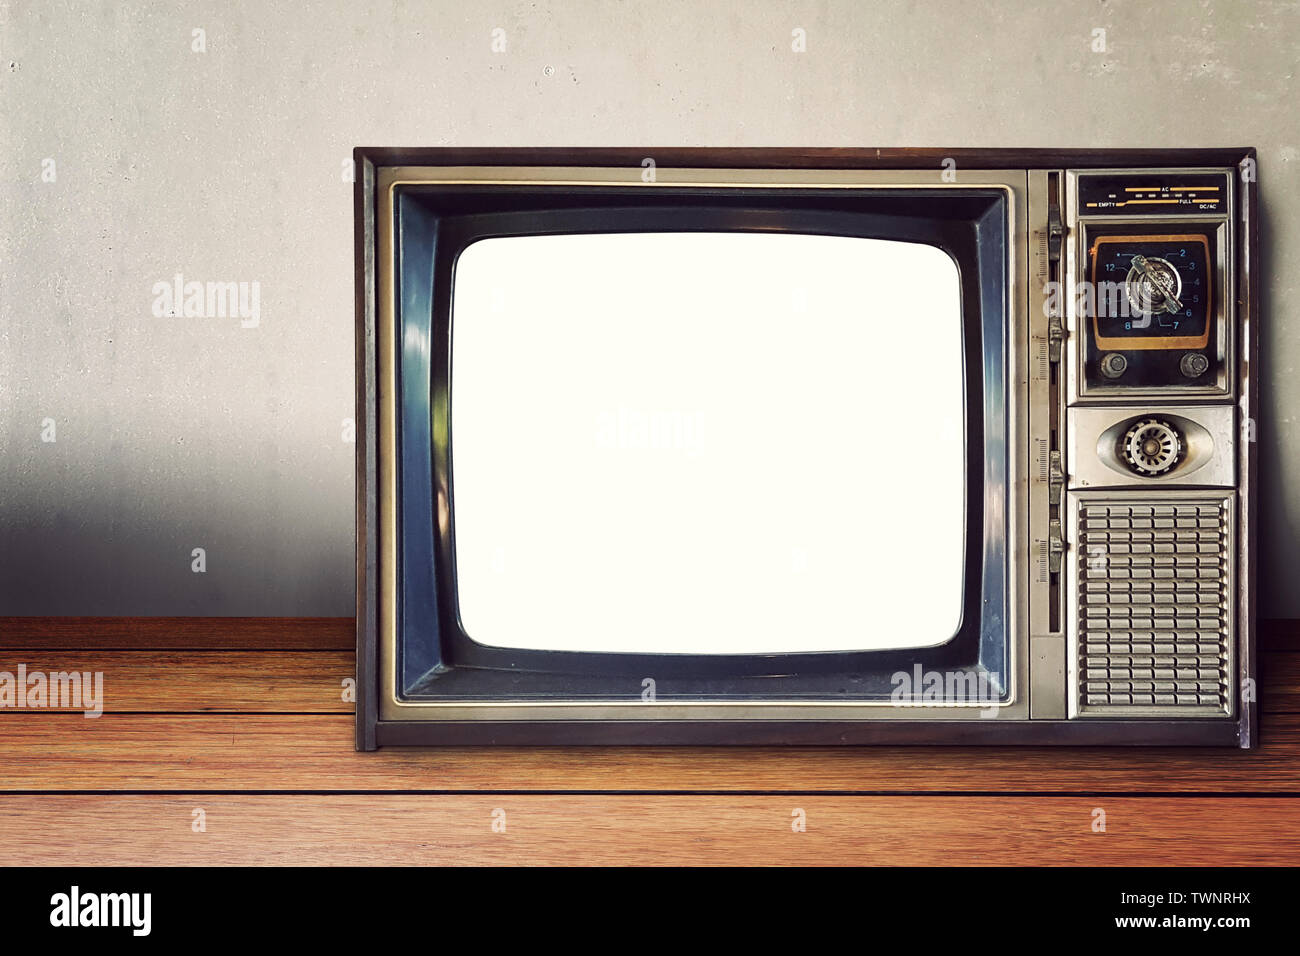 Vieux classique de la télévision analogique vintage style avec vide écran blanc sur fond mur rétro Banque D'Images